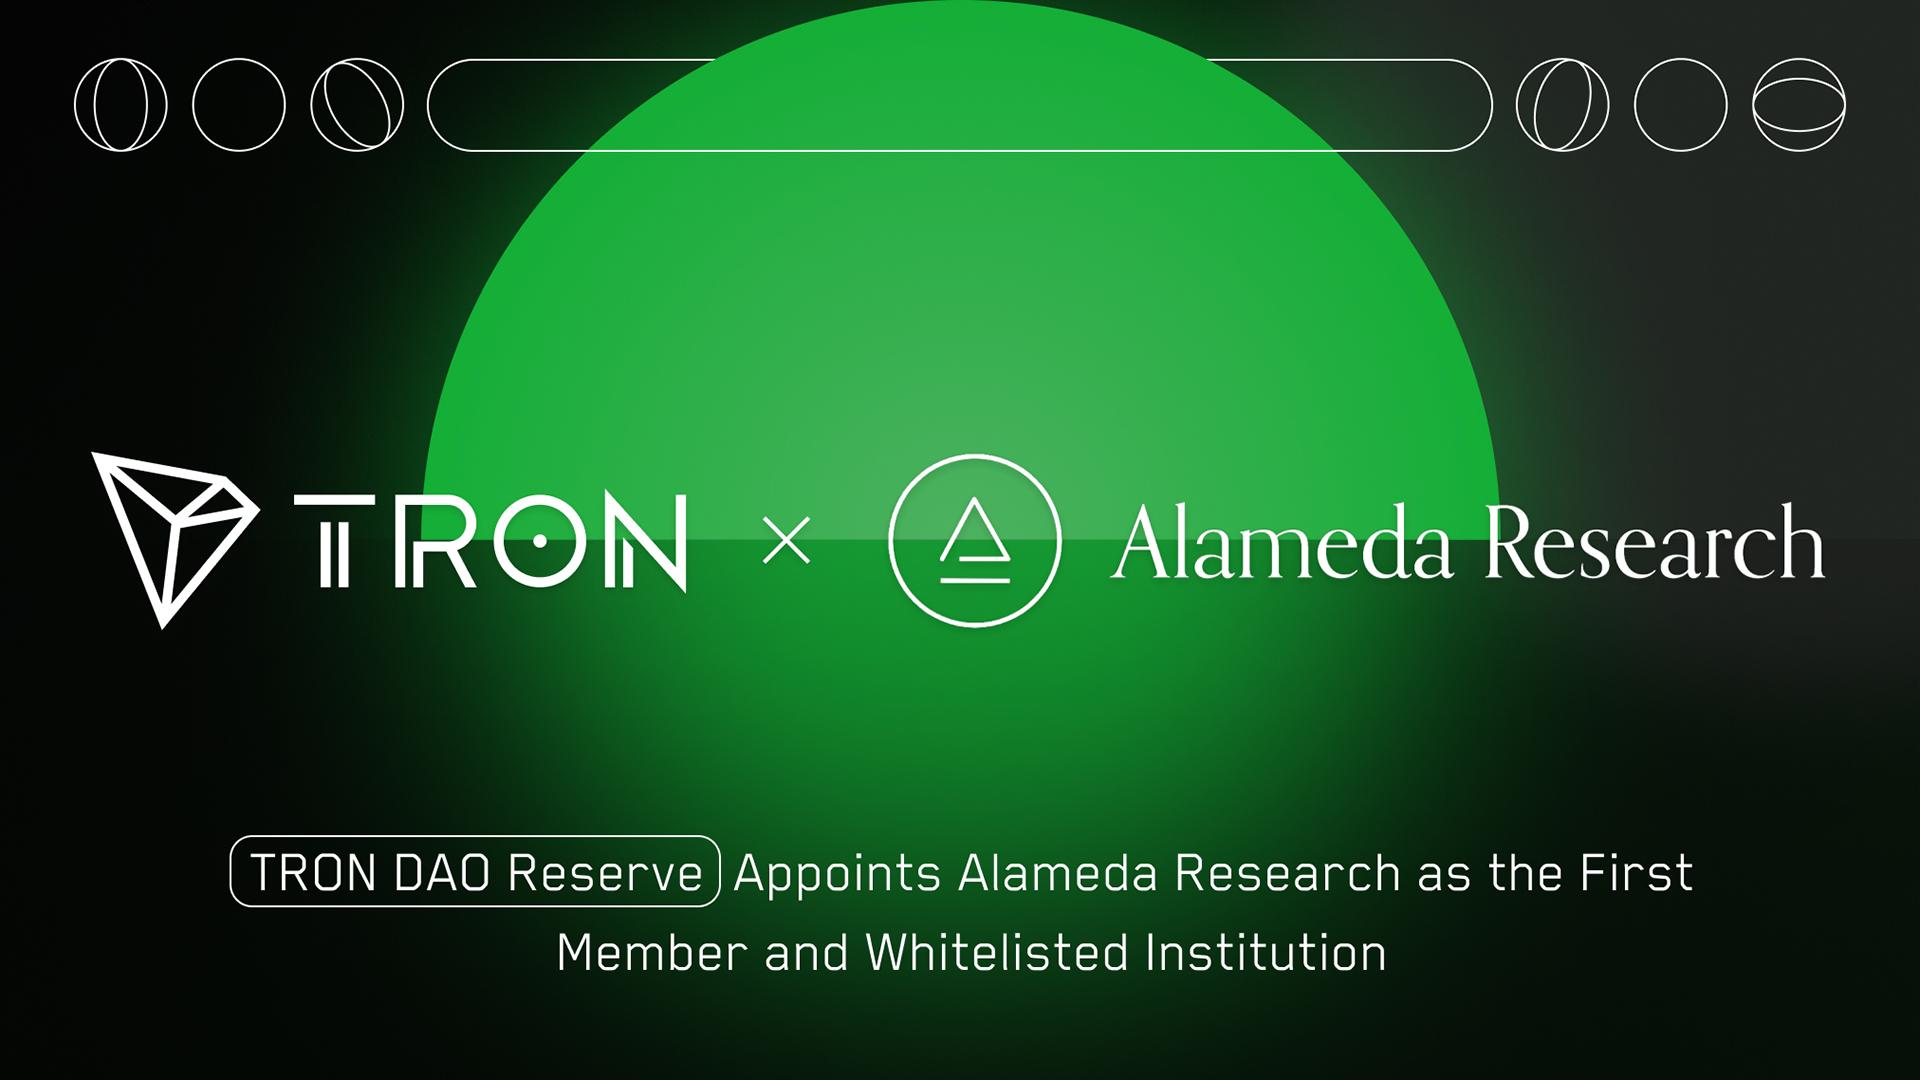 Tron Dao Reserve hợp tác với Alameda